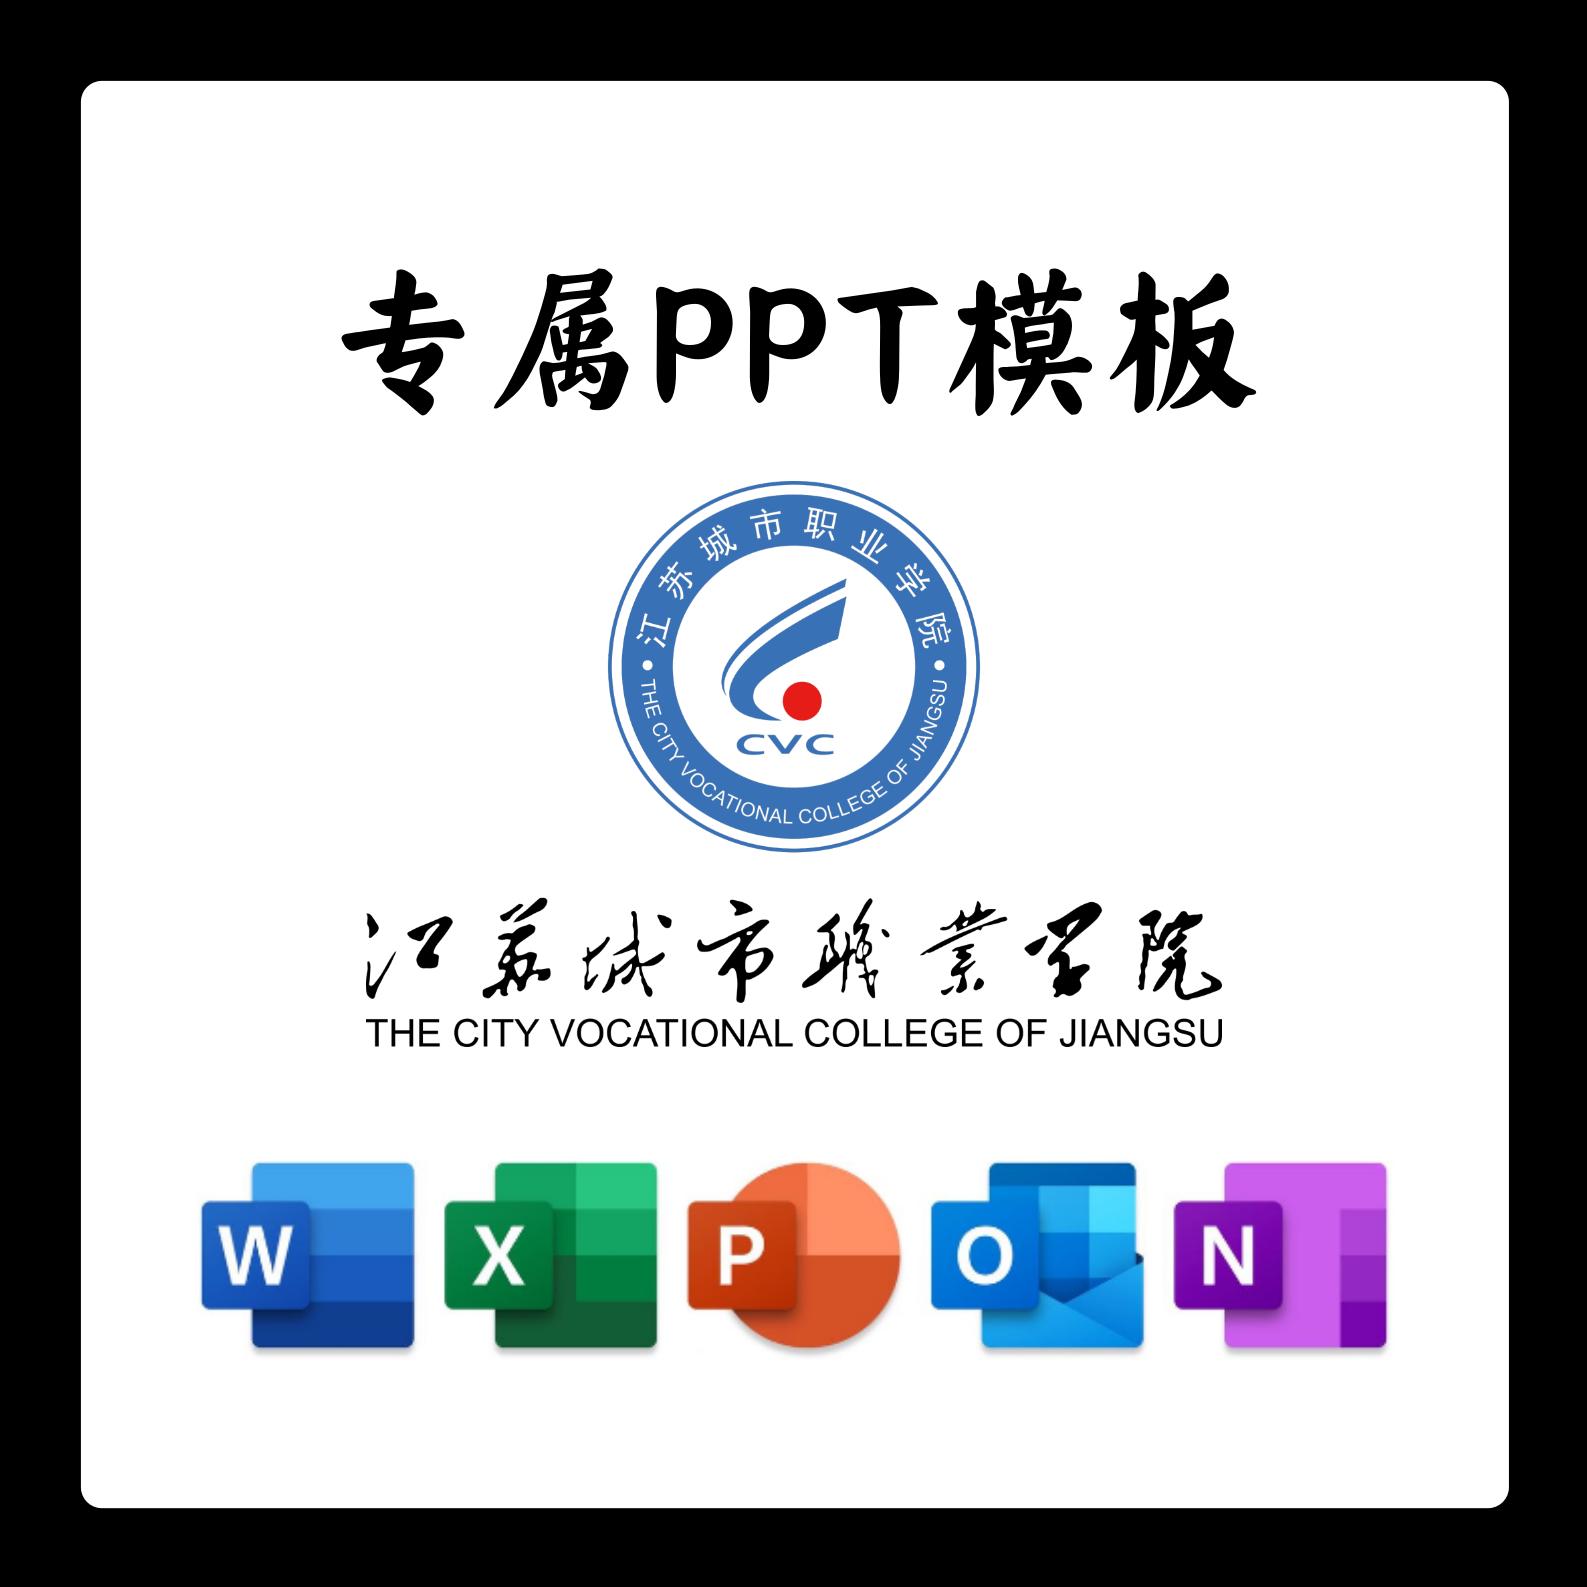 江苏城市职业学院PPT模板简约清新欧美毕业答辩汇报总结开题中期